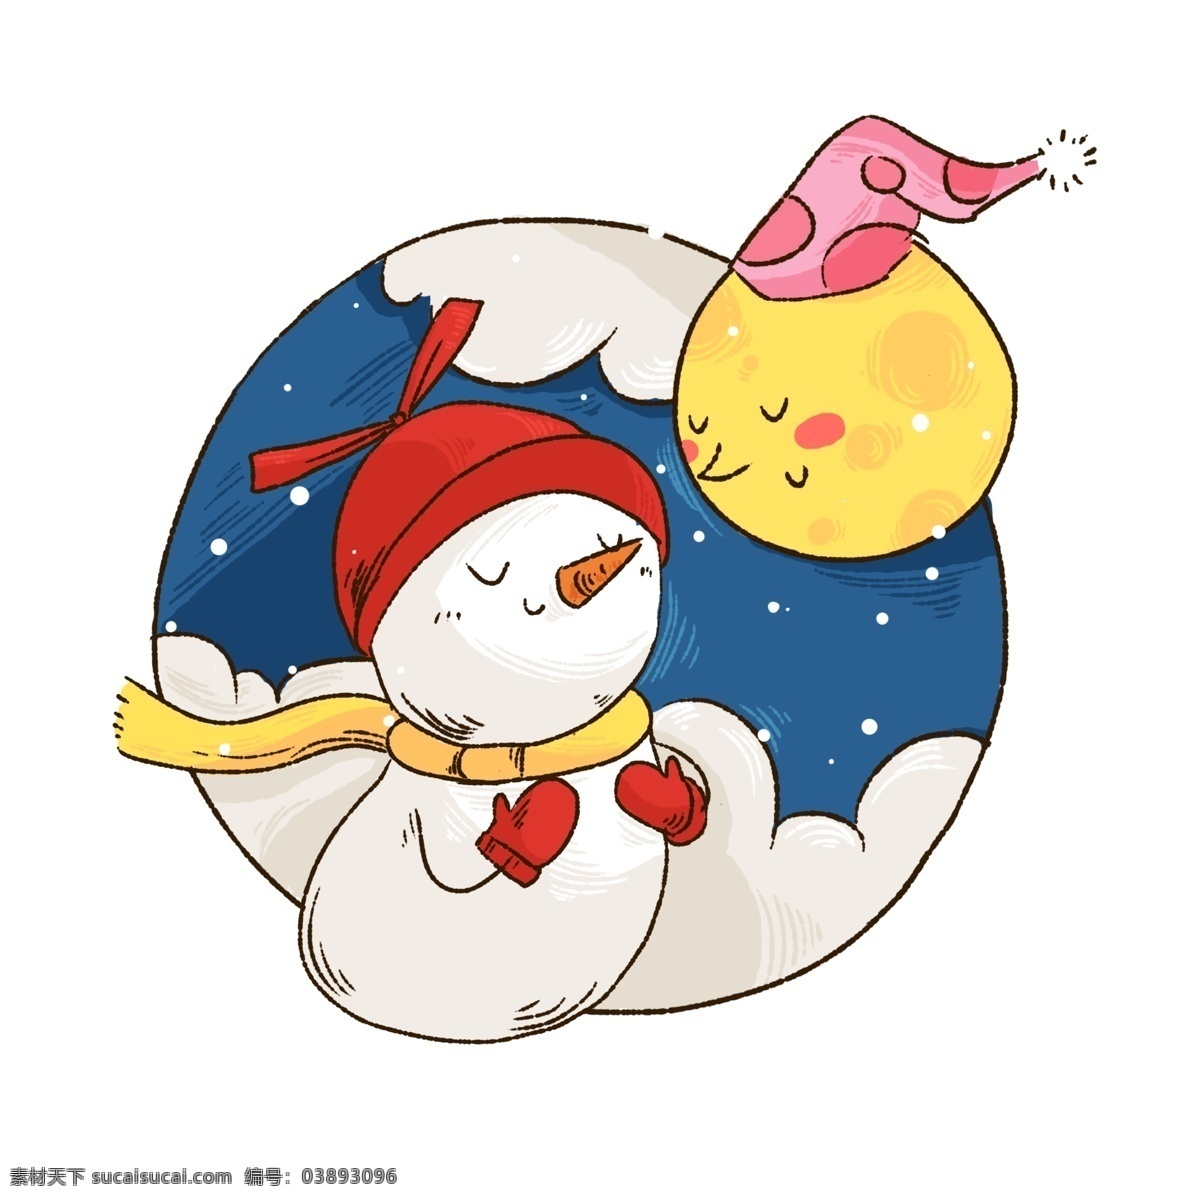 冬季 冬天 可爱 雪人 卡通 形象 月亮 拟人 夜晚 交流 下雪 温暖